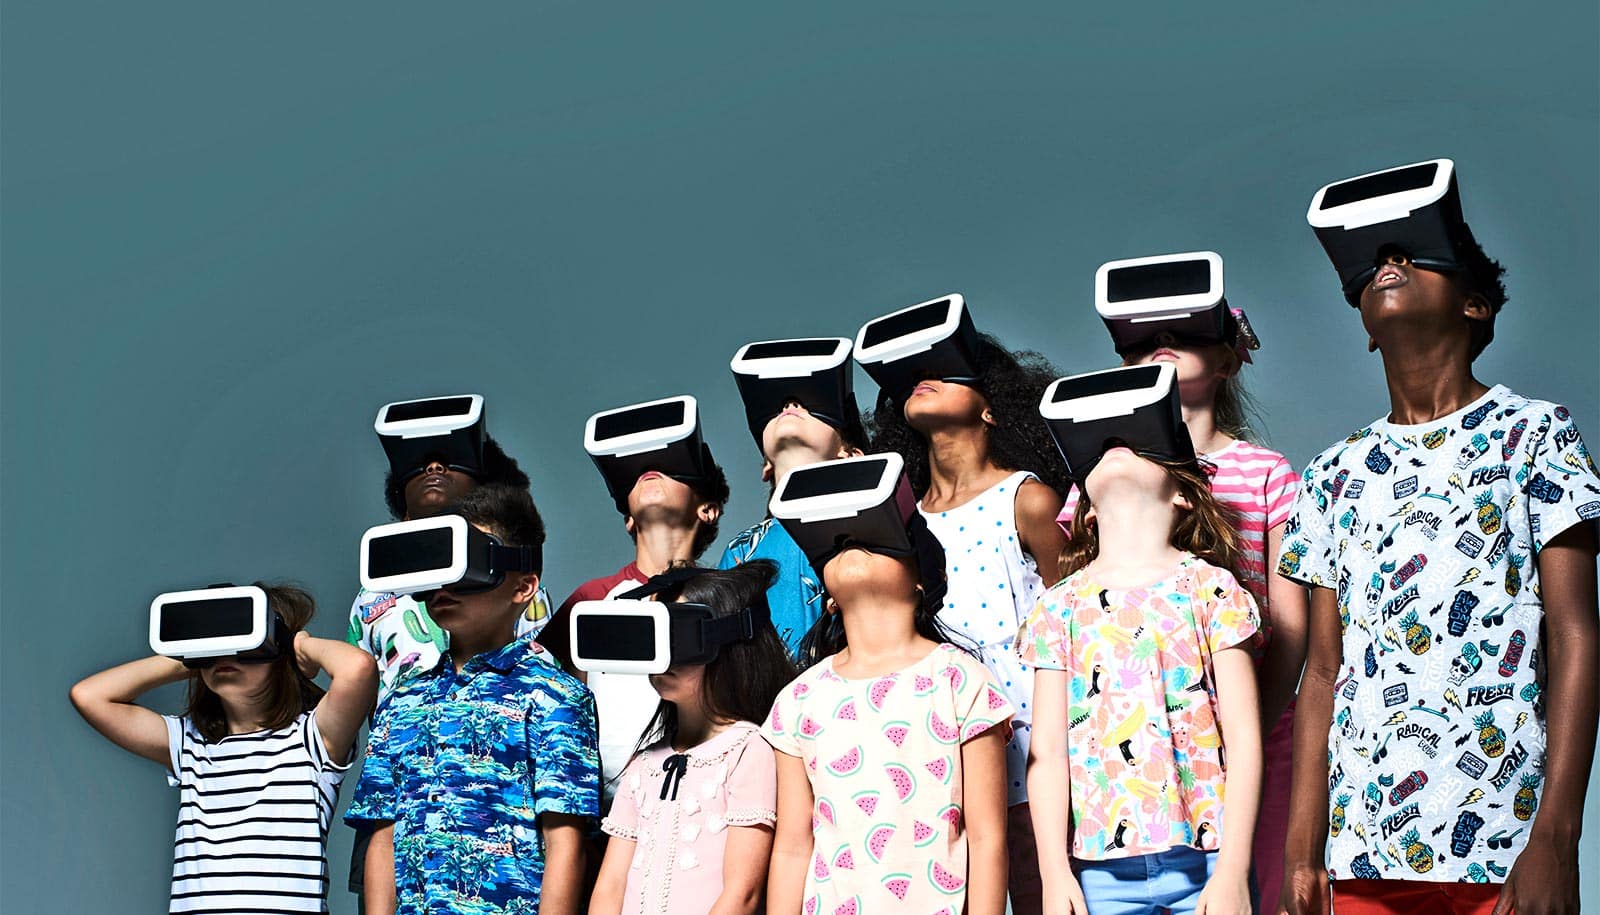 چرا والدین باید بیشتر نگران استفاده کودکان از VR باشند؟